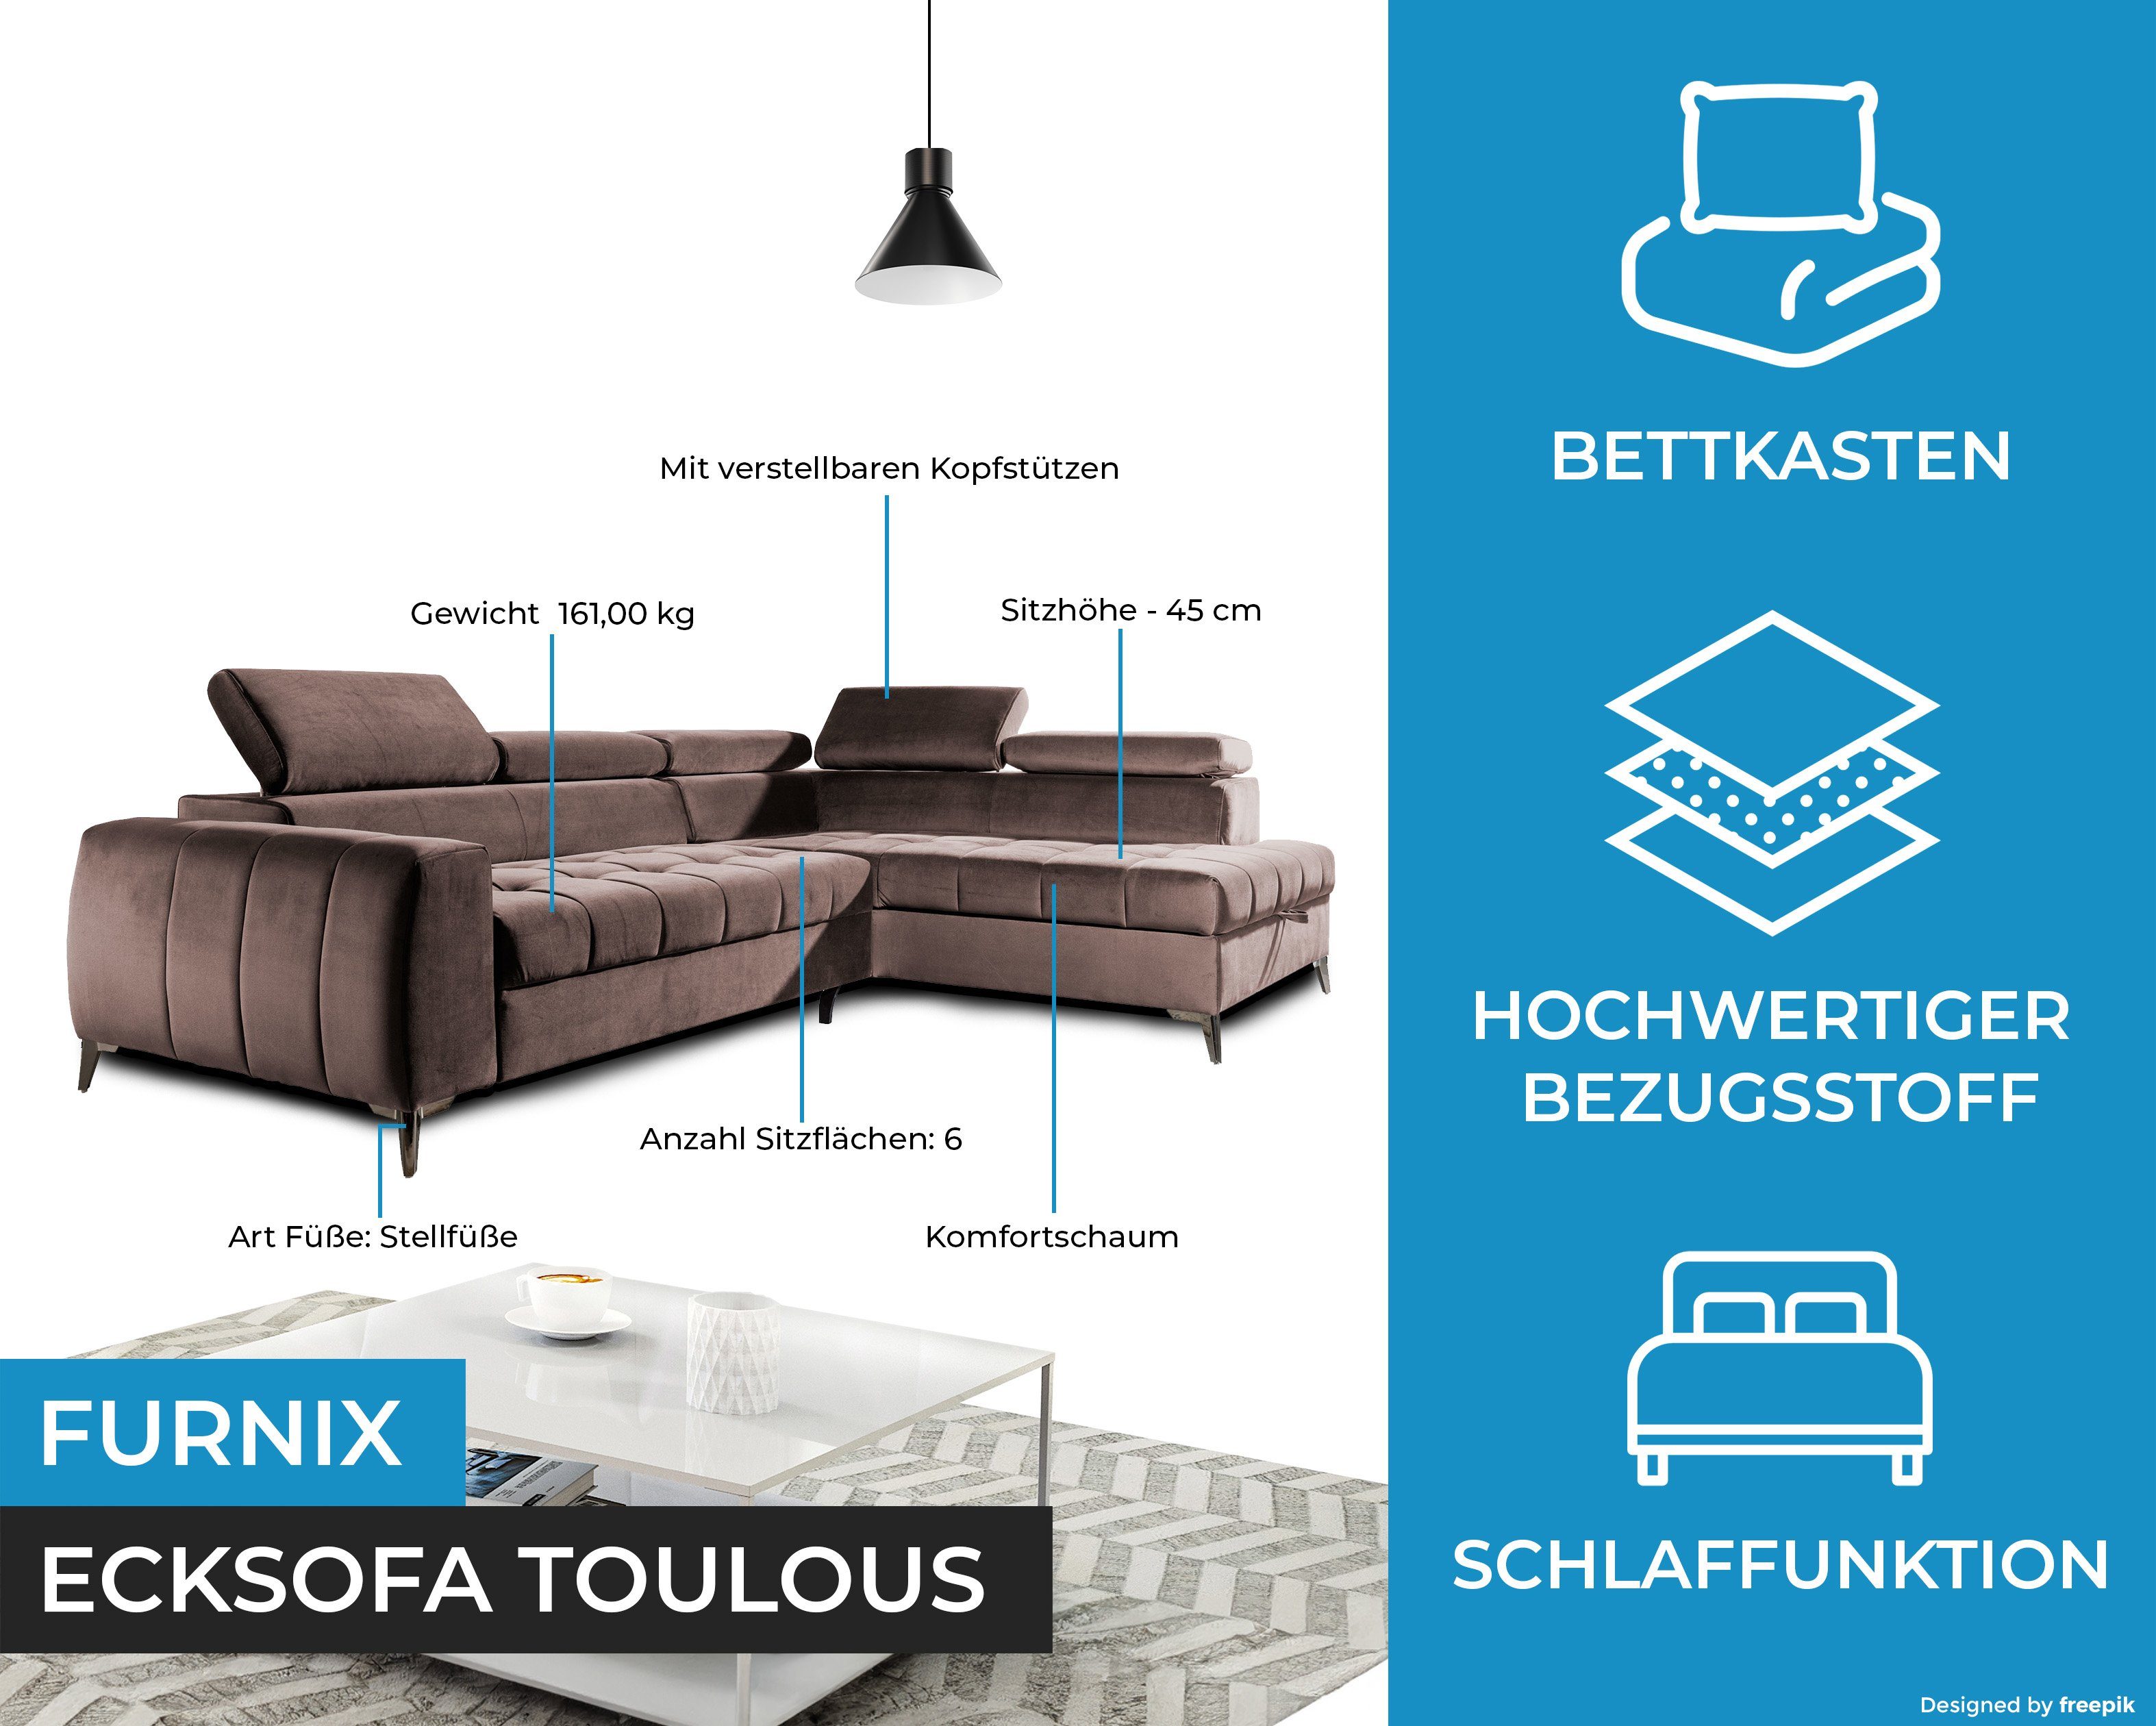 x x B200 TOULOUS Furnix Sofa Verarbeitung Auswahl, DL H95 B275 Schlaffunktion cm hochwertige Braun Automat Ecksofa mit Maße: